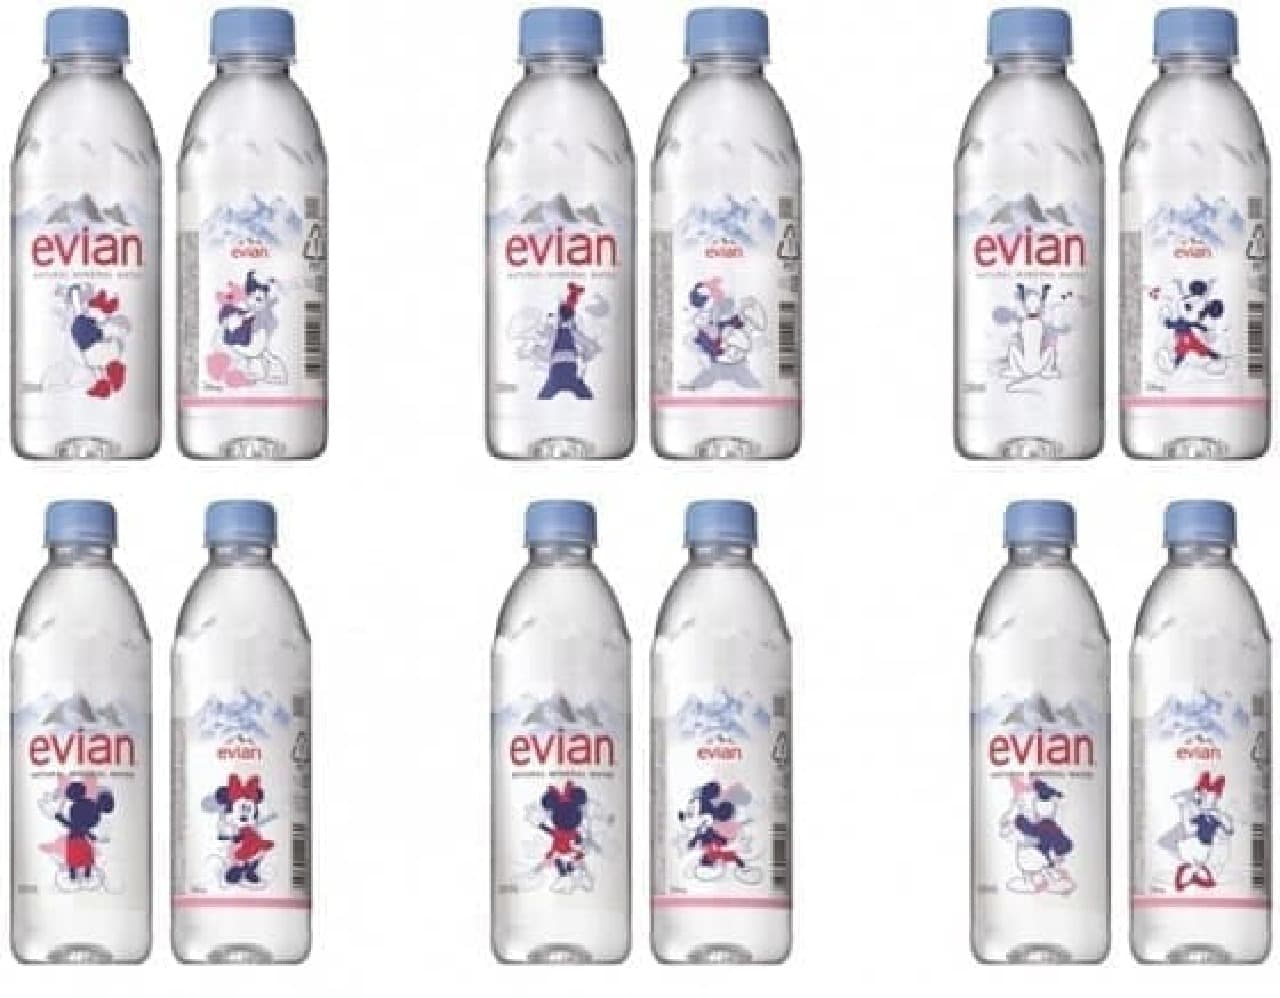 Evian Disney Design Bottle Is Wonderful See Through Design Utilizing A Transparent Bottle Entabe Com